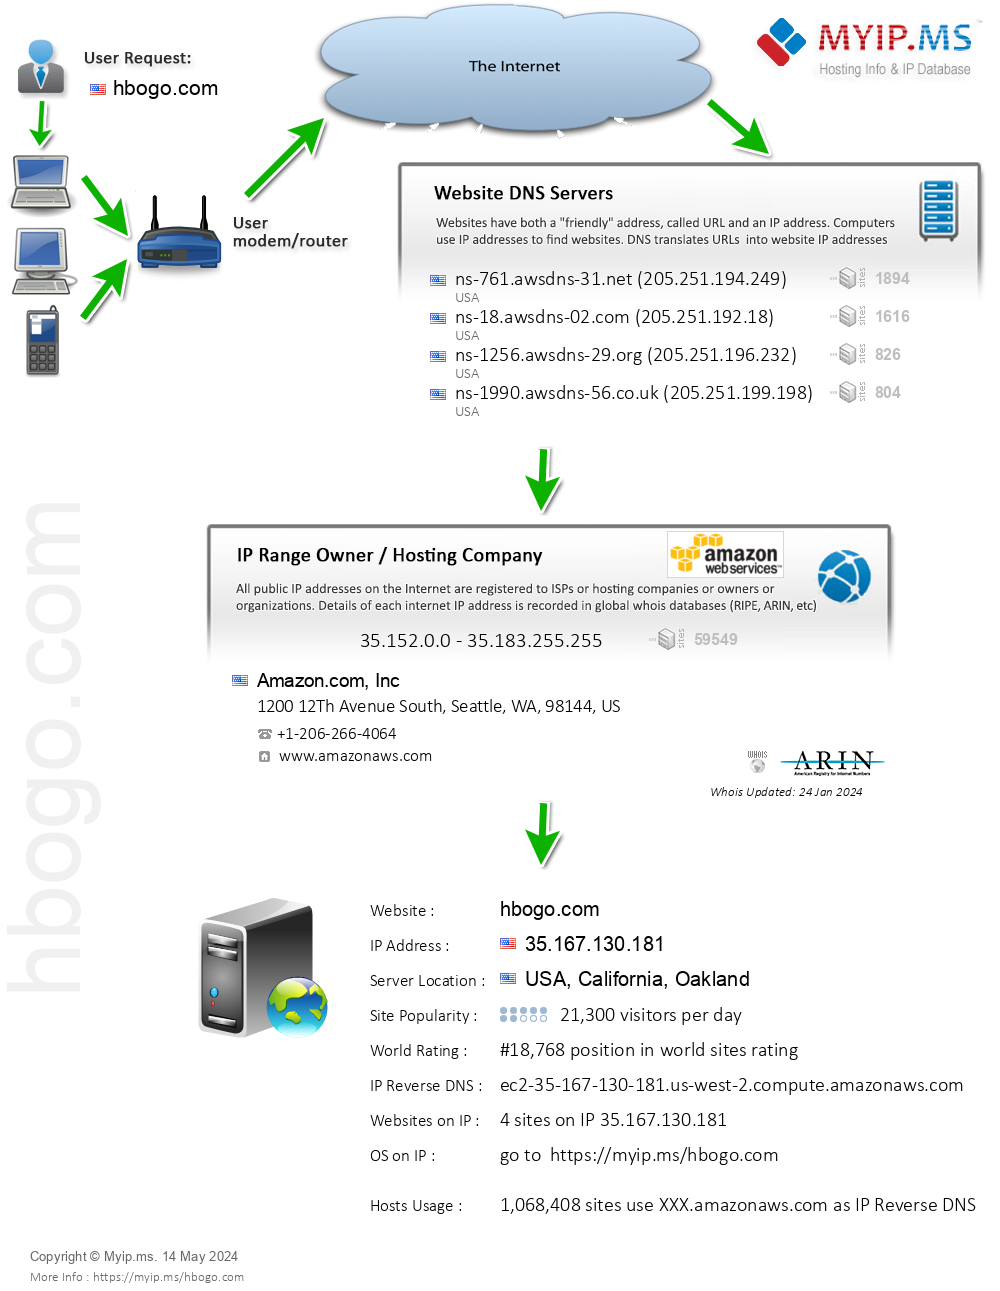 Hbogo.com - Website Hosting Visual IP Diagram